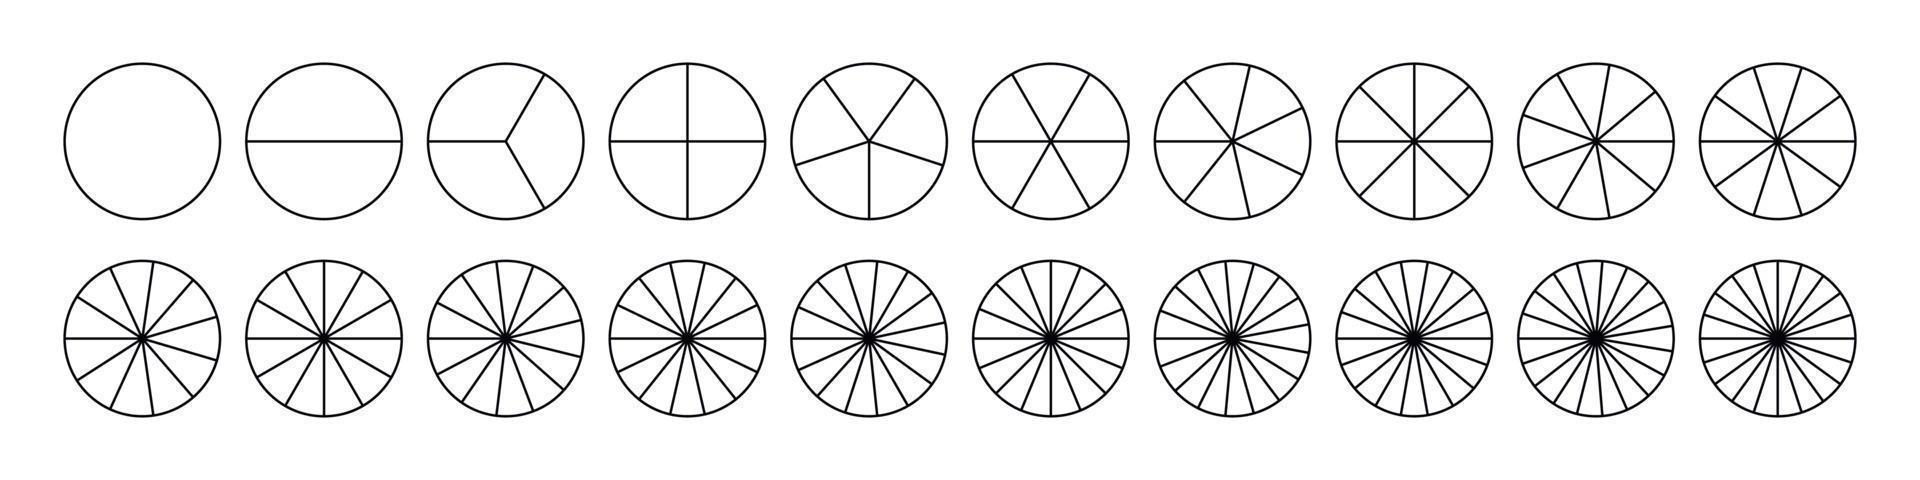 Brüche Kuchen geteilt für Mathe. Kreiskuchen mit Stücken. Segment-Slice-Set. einfache Geometrie. vektor isolierte illustration